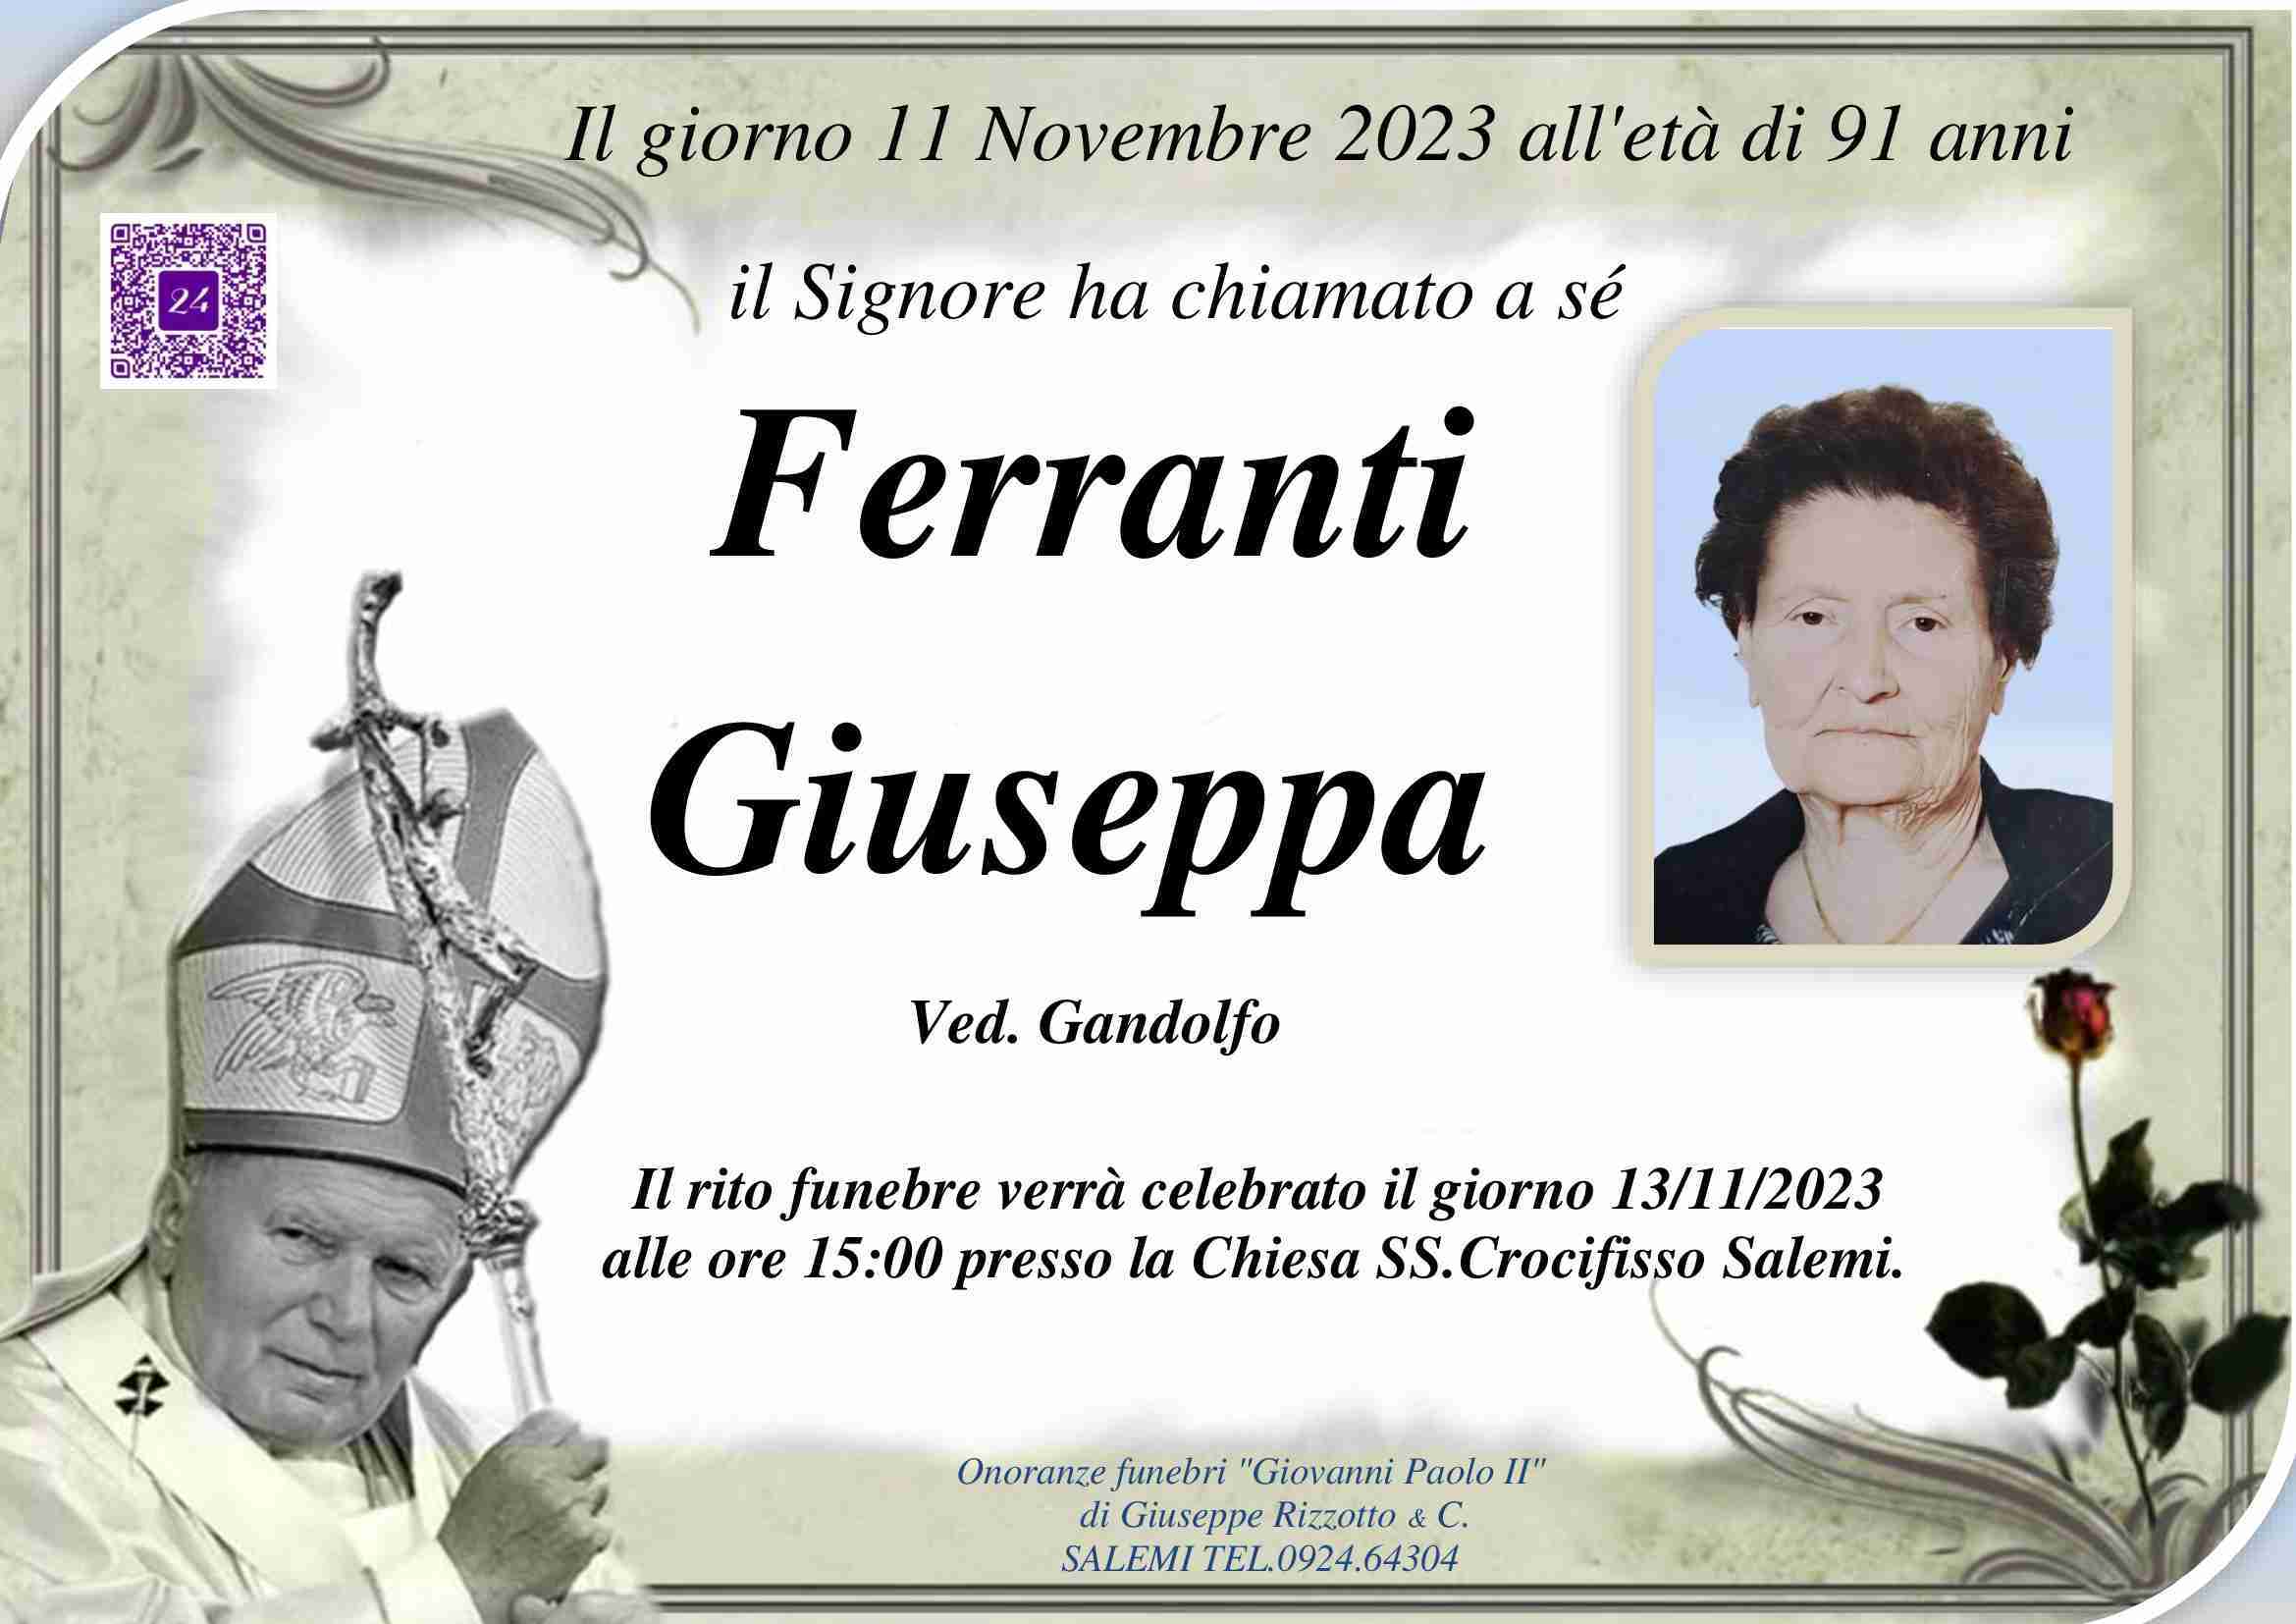 Giuseppa Ferranti